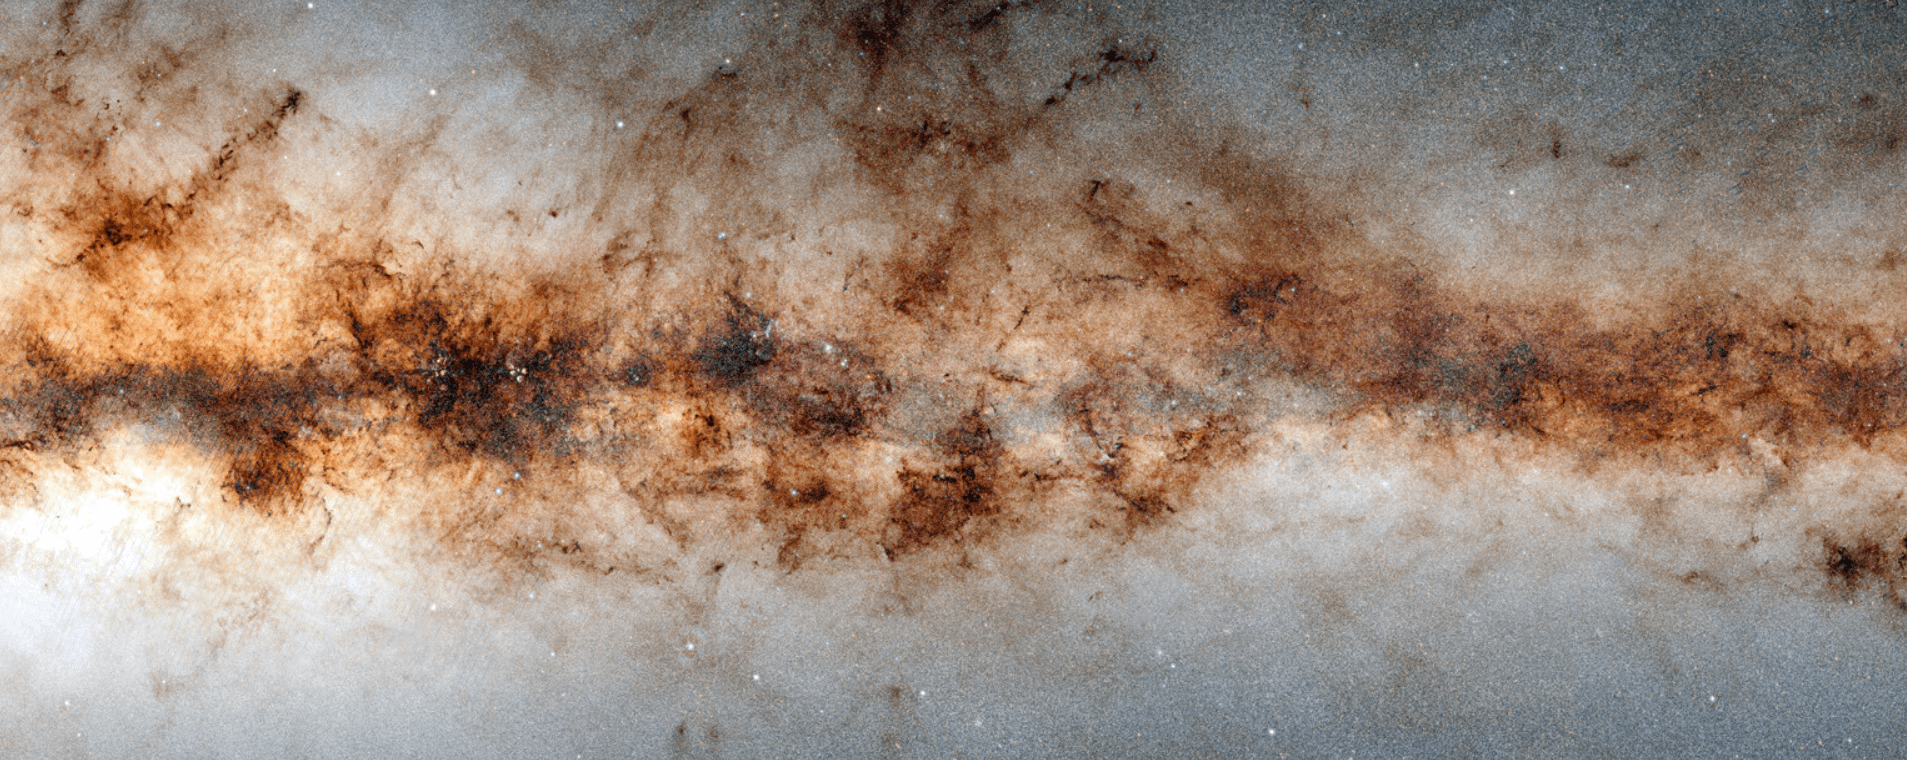 3,32 миллиарда небесных объектов обнаружено в новой мозаике Млечного Пути